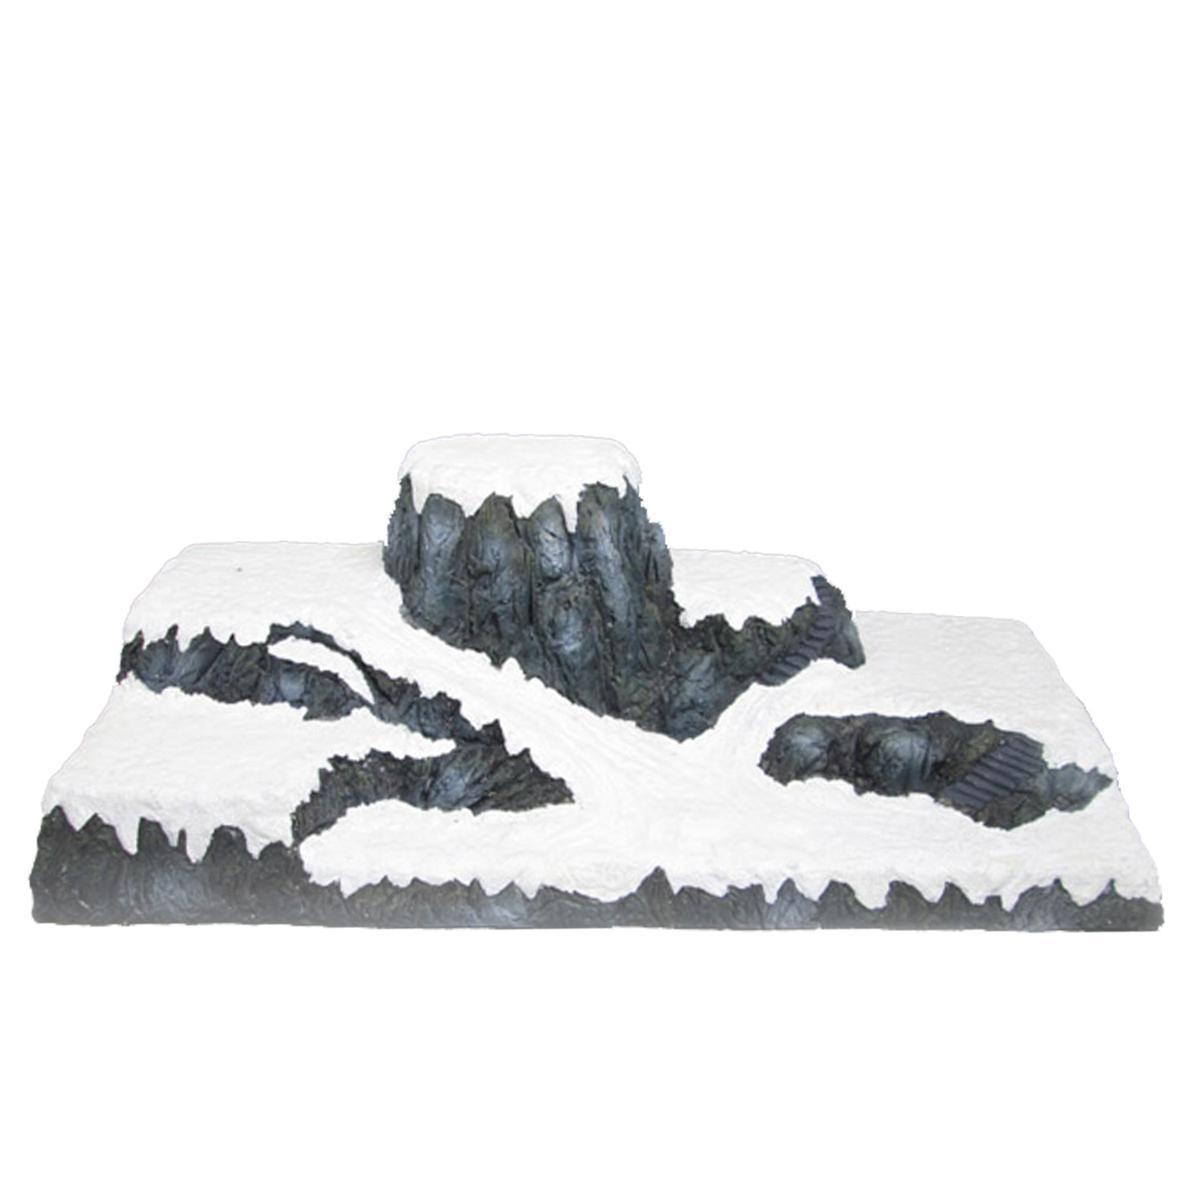 Décor enneigé pour village de Noël - 58 x 26 x 18 cm - Blanc, gris